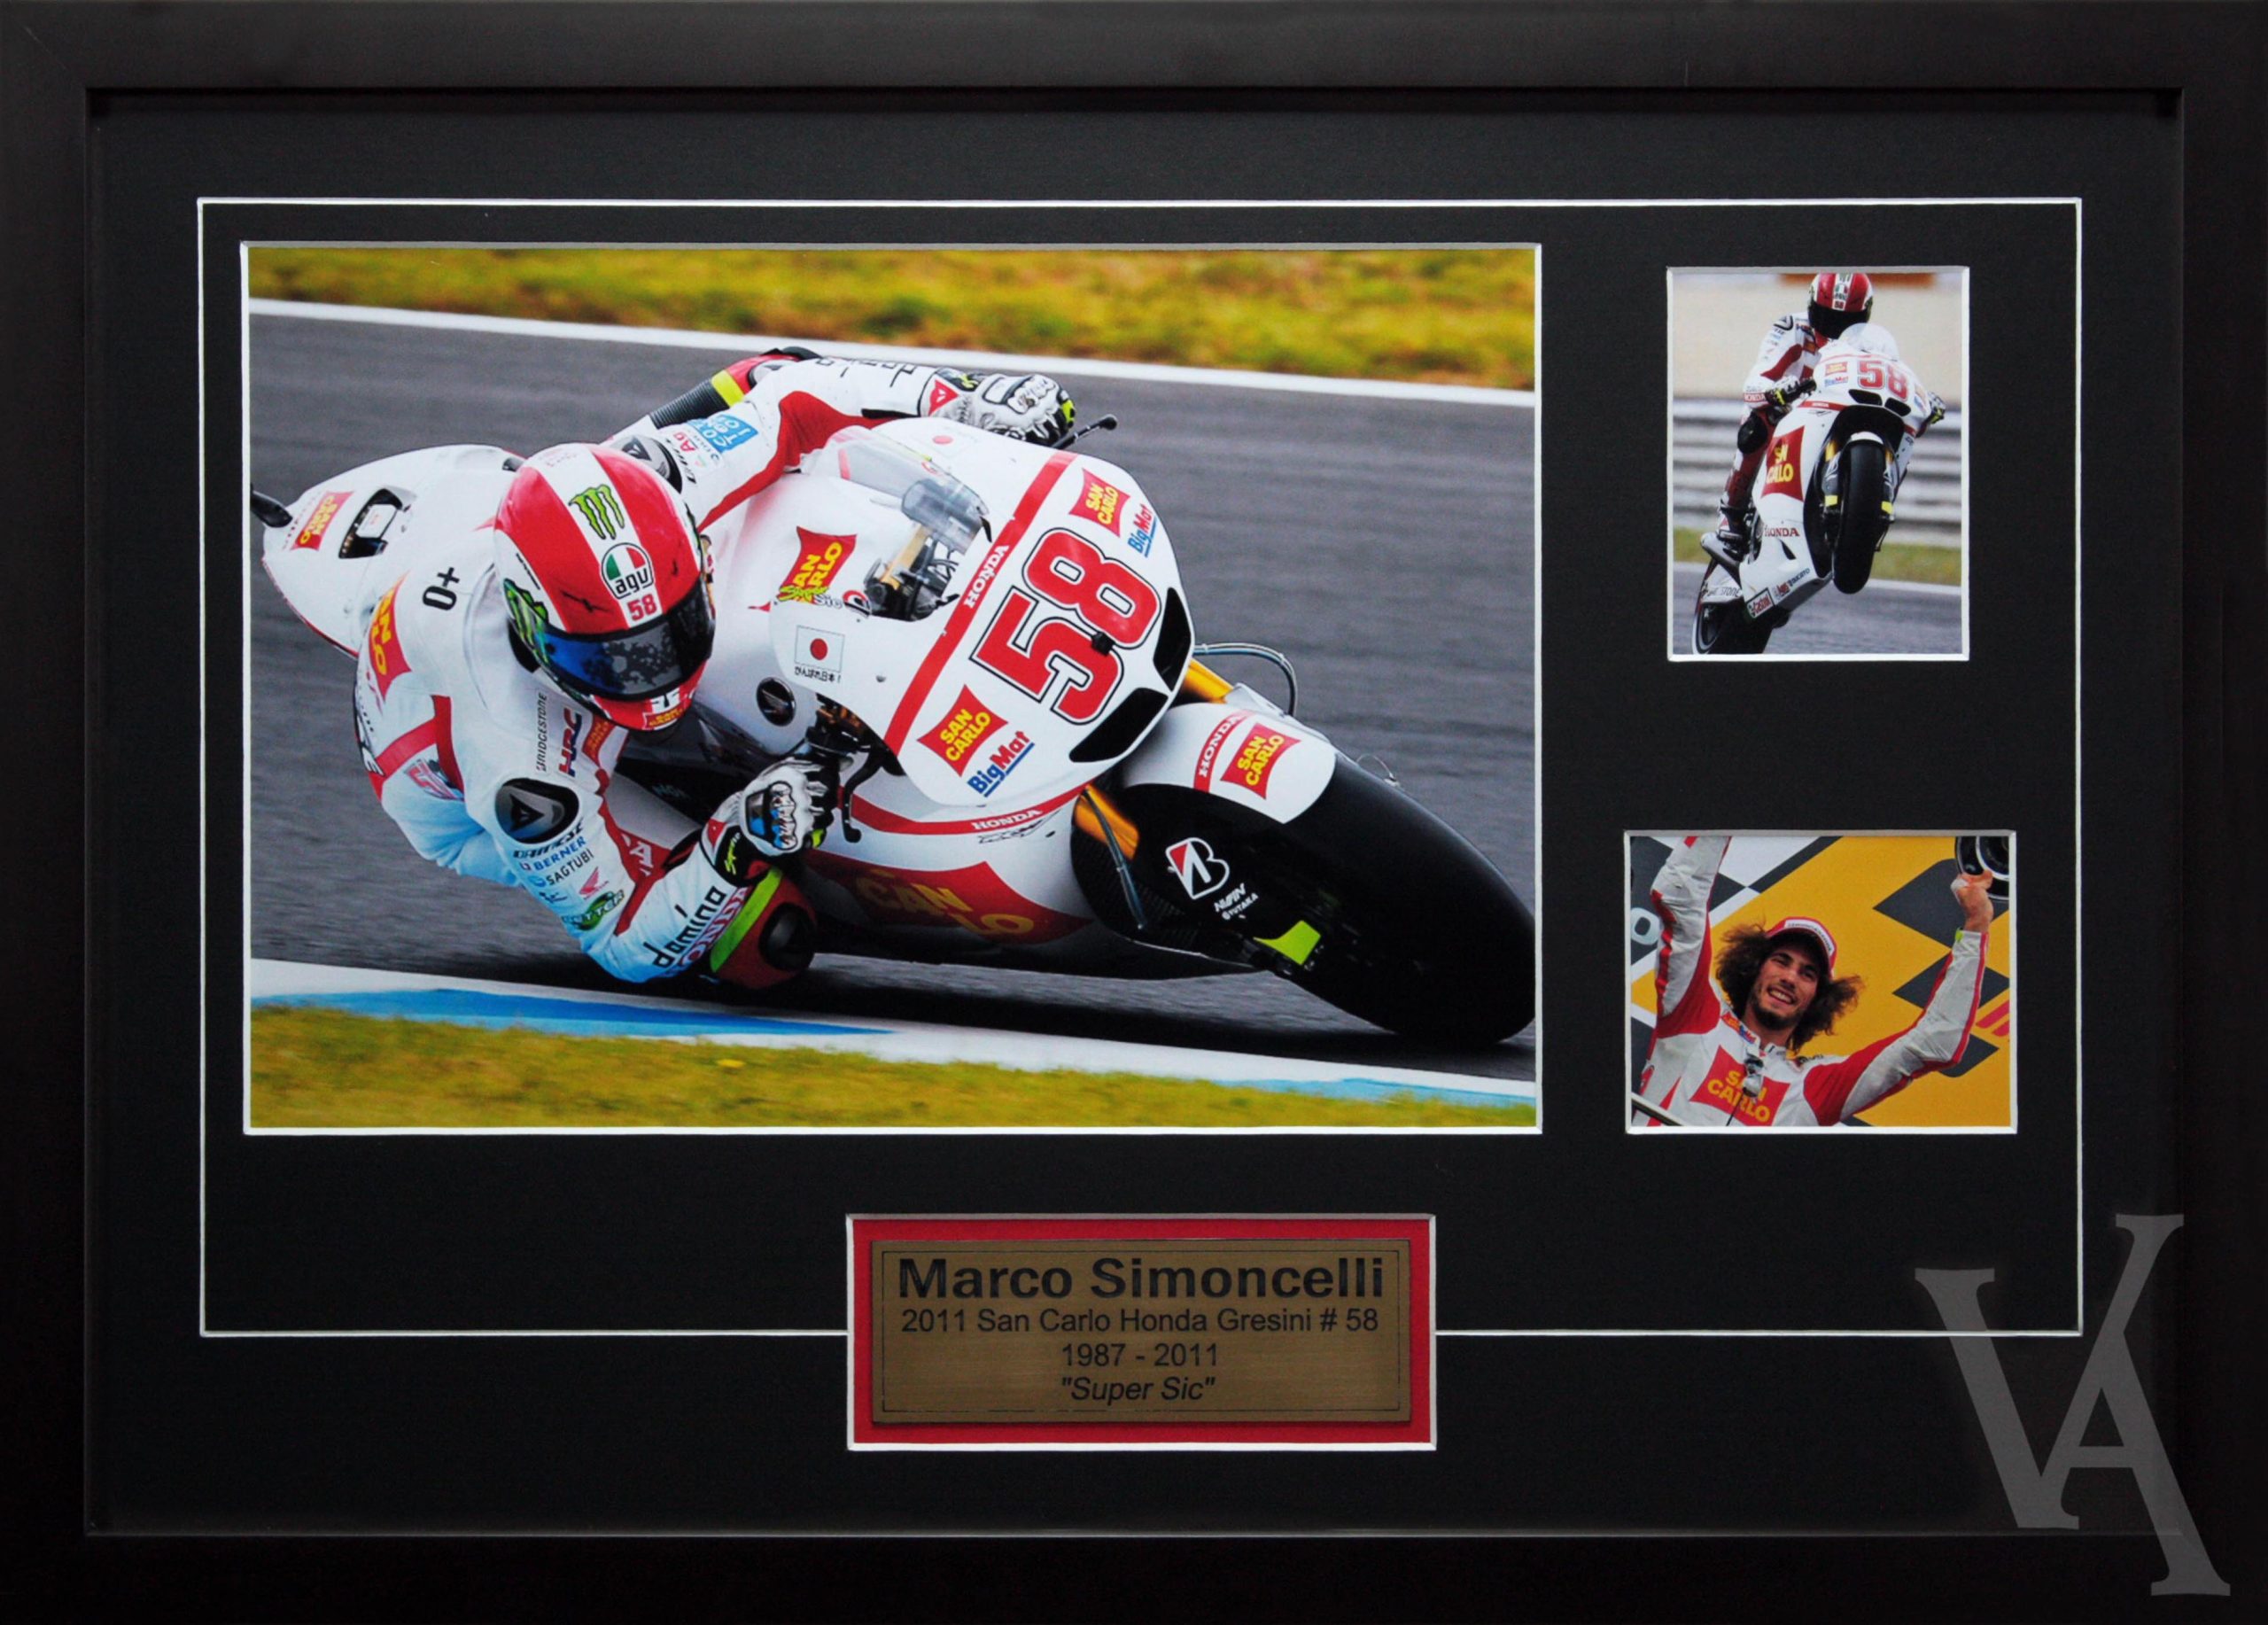 Marco Simoncelli Moto GP Racing Memorabilia. Team Honda Moto GP Racing 1987-20011 "Super Sic"